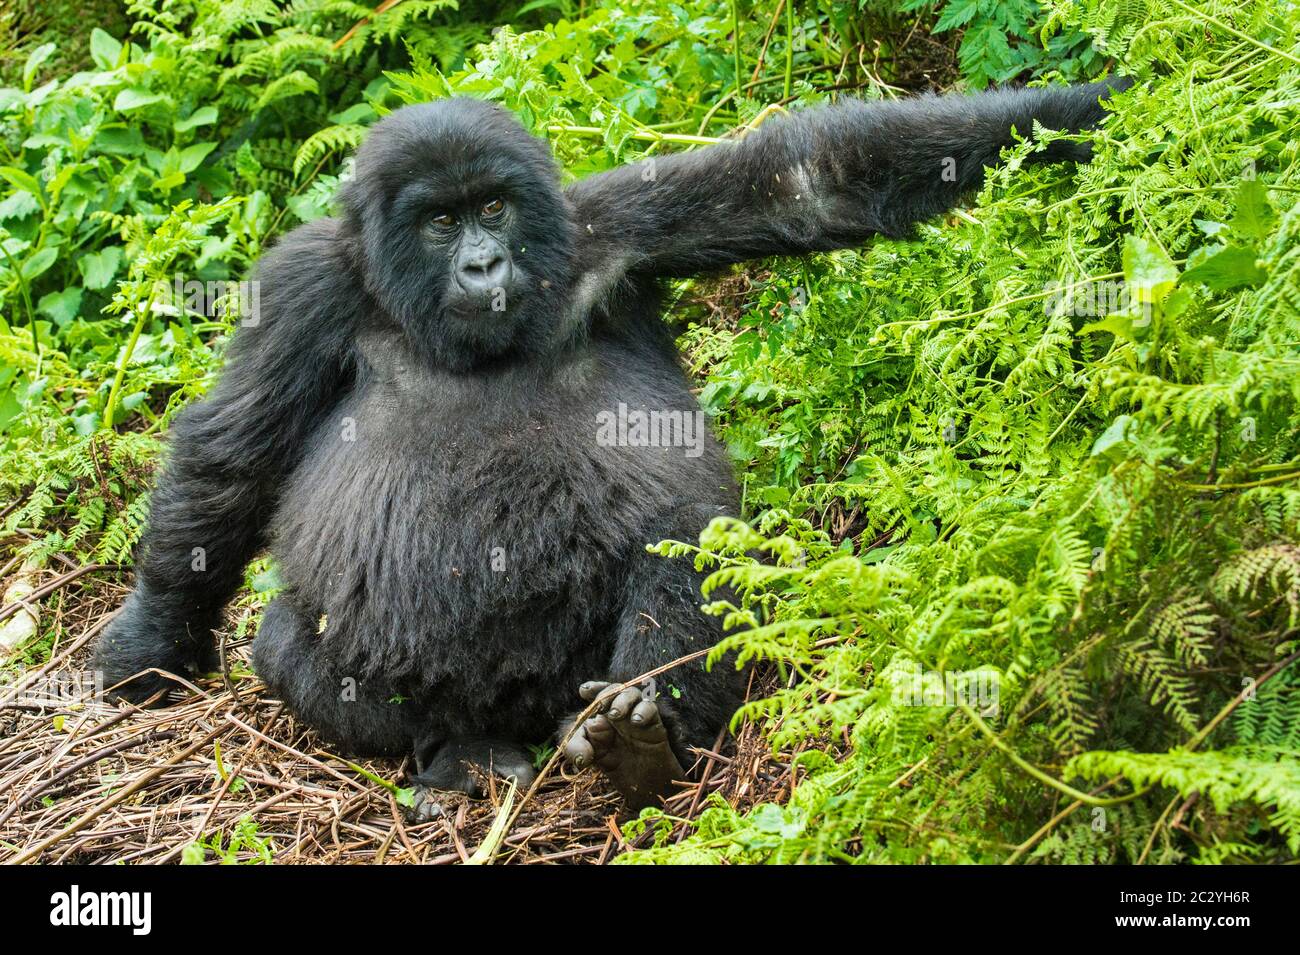 Close up portrait of mountain gorilla (Gorilla beringei beringei), Rwanda, Africa Stock Photo